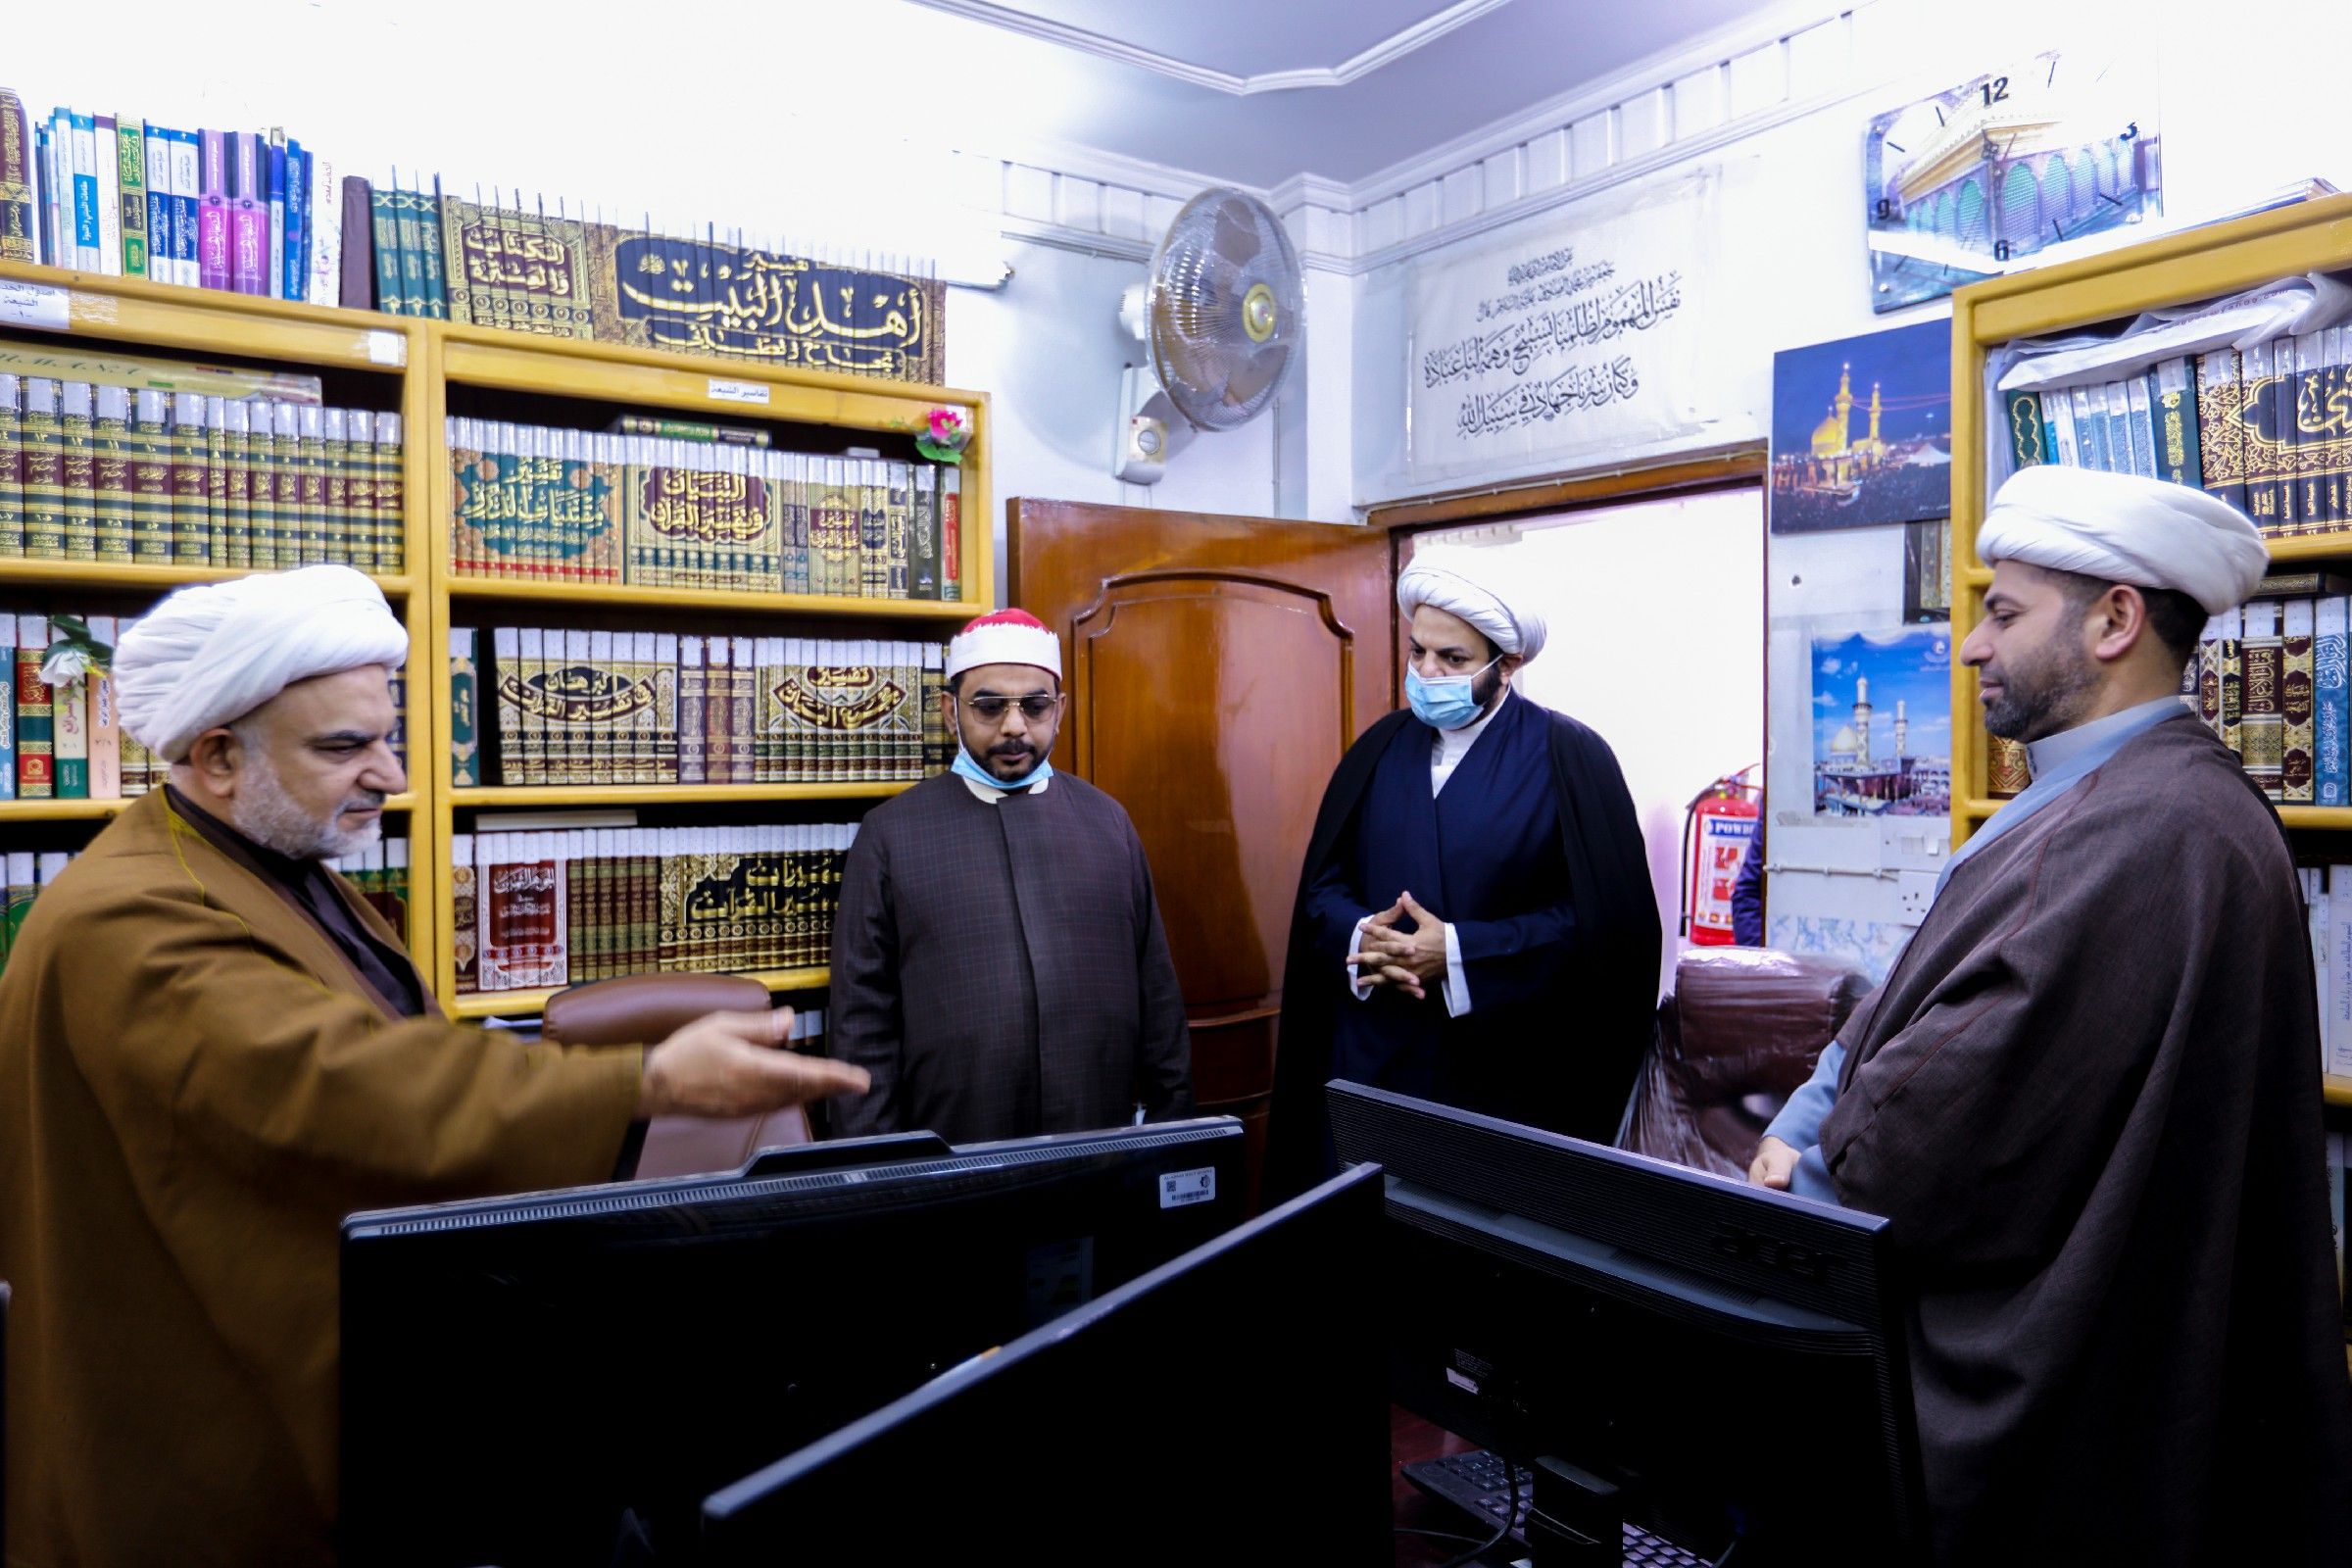 المقرئ المصري محمد عصفور: شاهدت في معهد القرآن الكريم جهود مميزة تستحق الإشادة